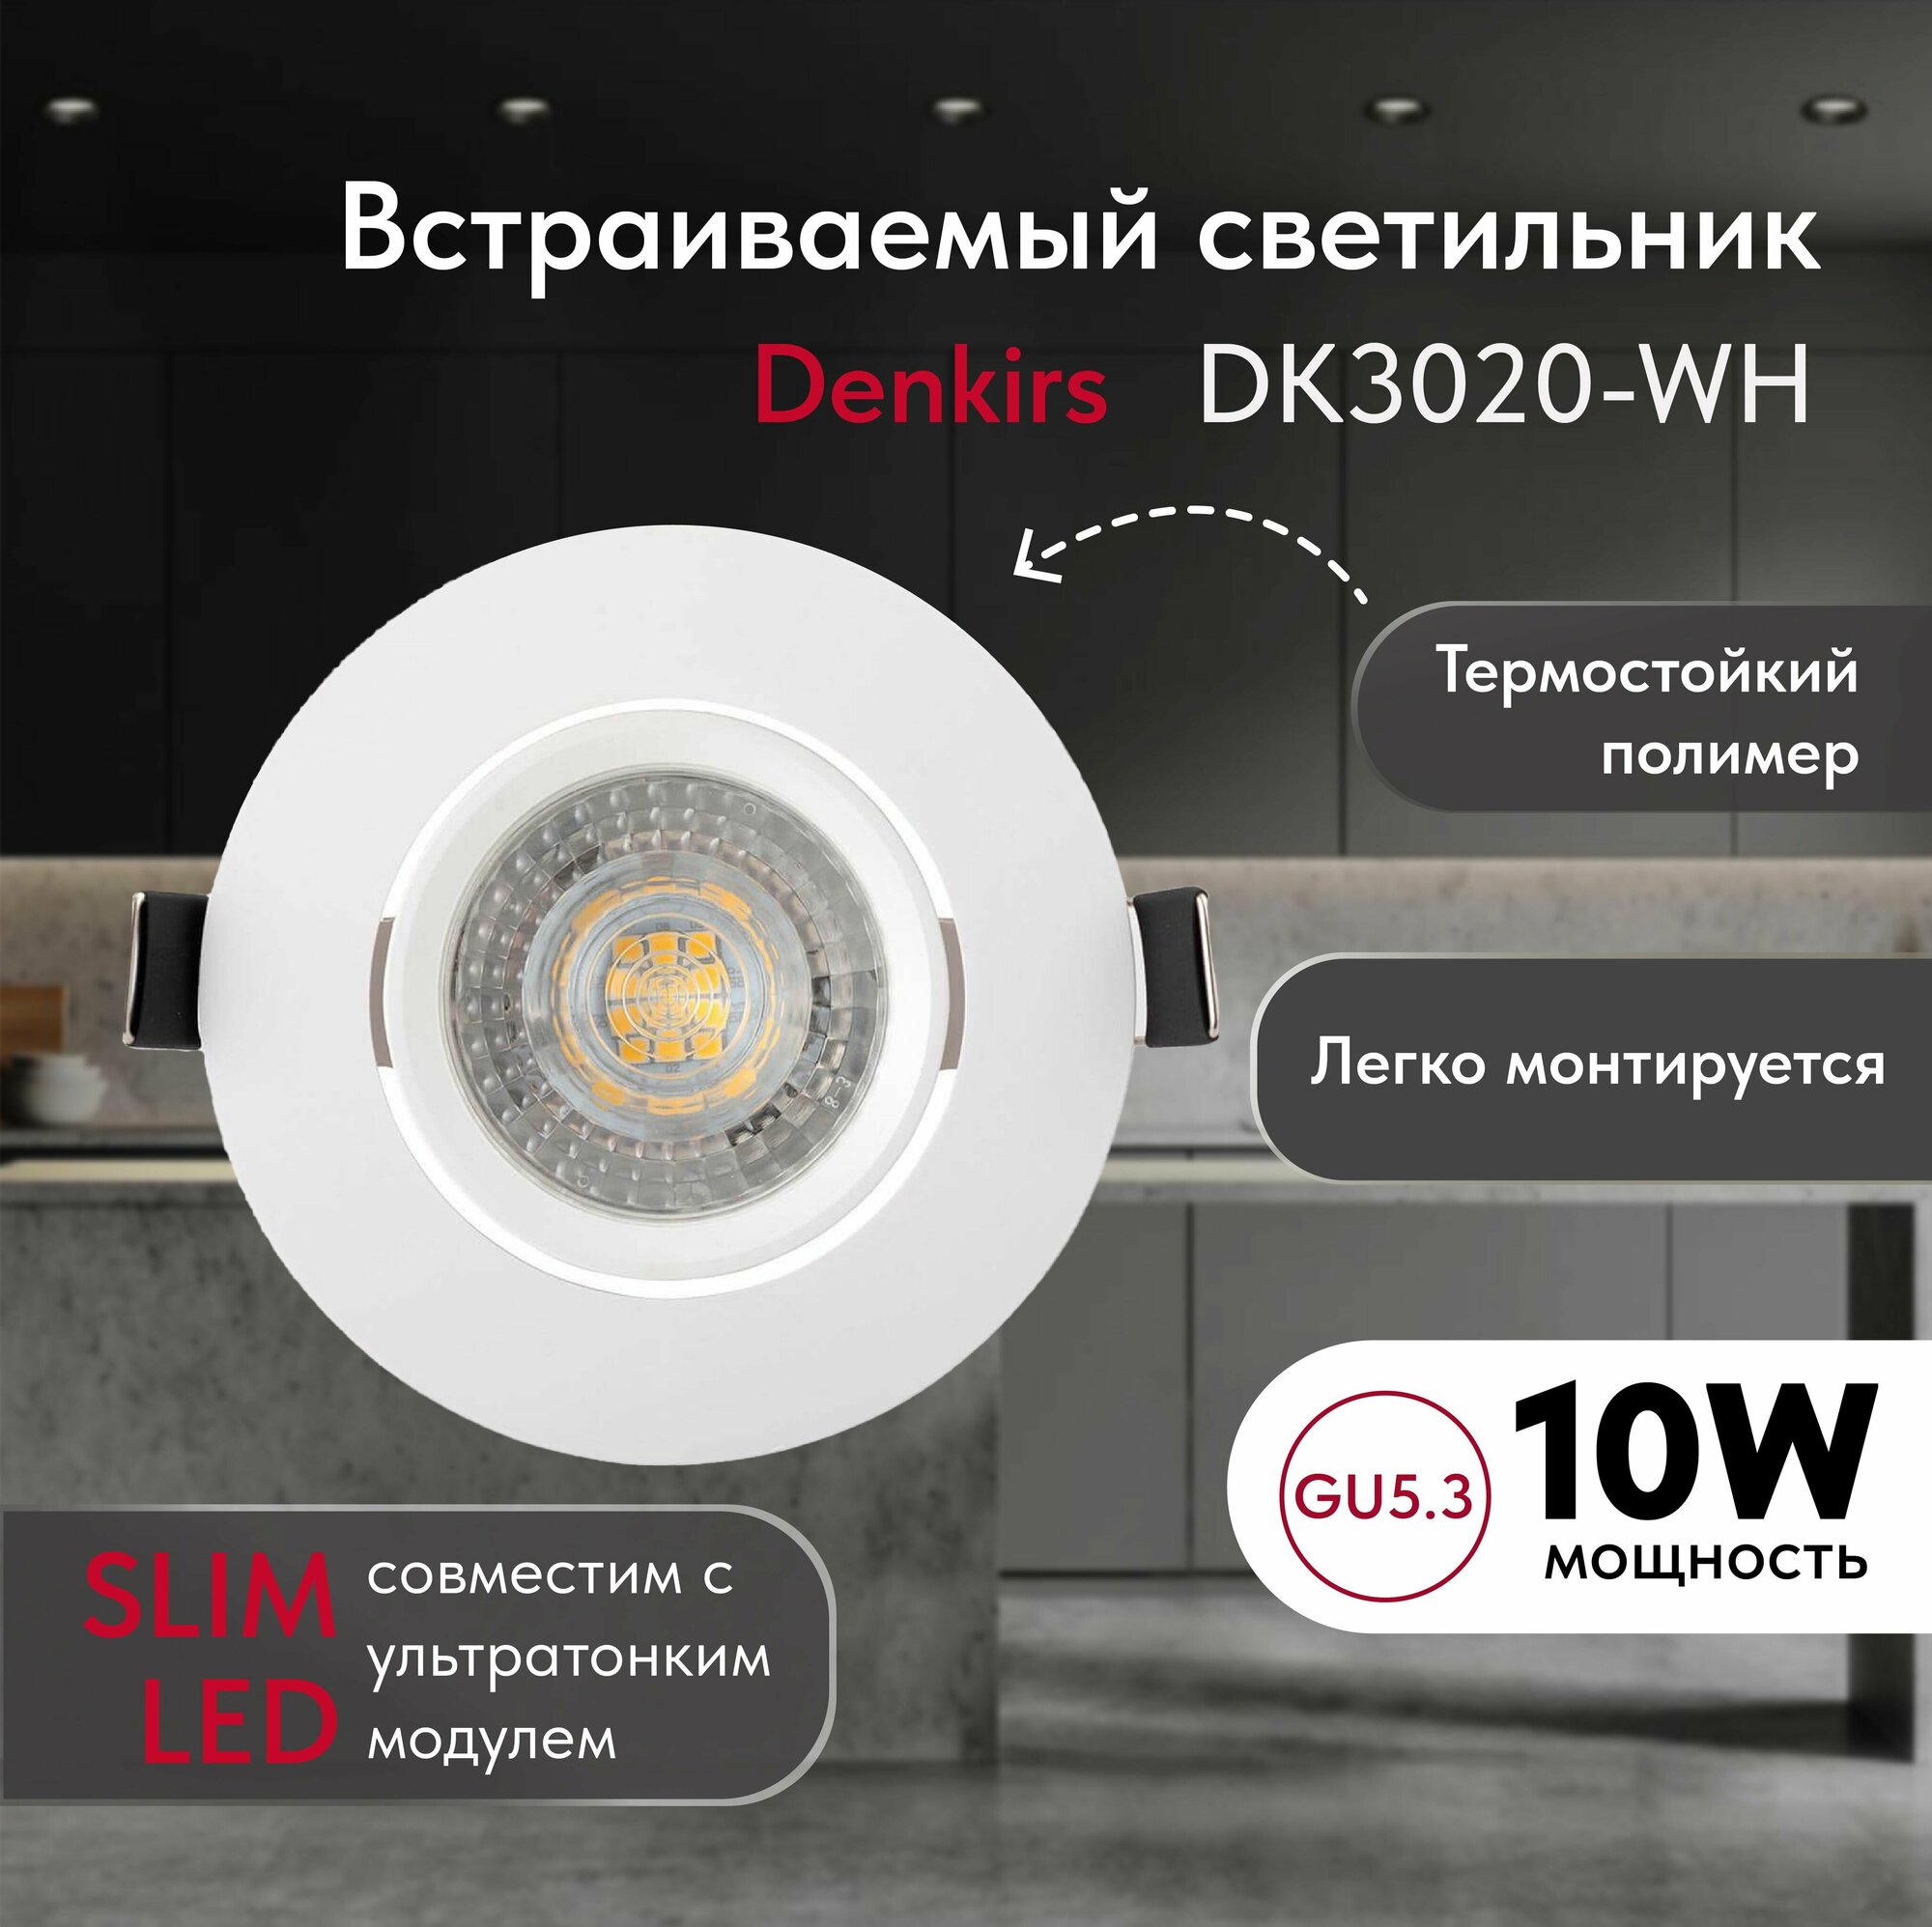 Светильник потолочный встраиваемый DENKIRS DK3020-WH, IP 20, 10 Вт, GU5.3, LED, белый, пластик